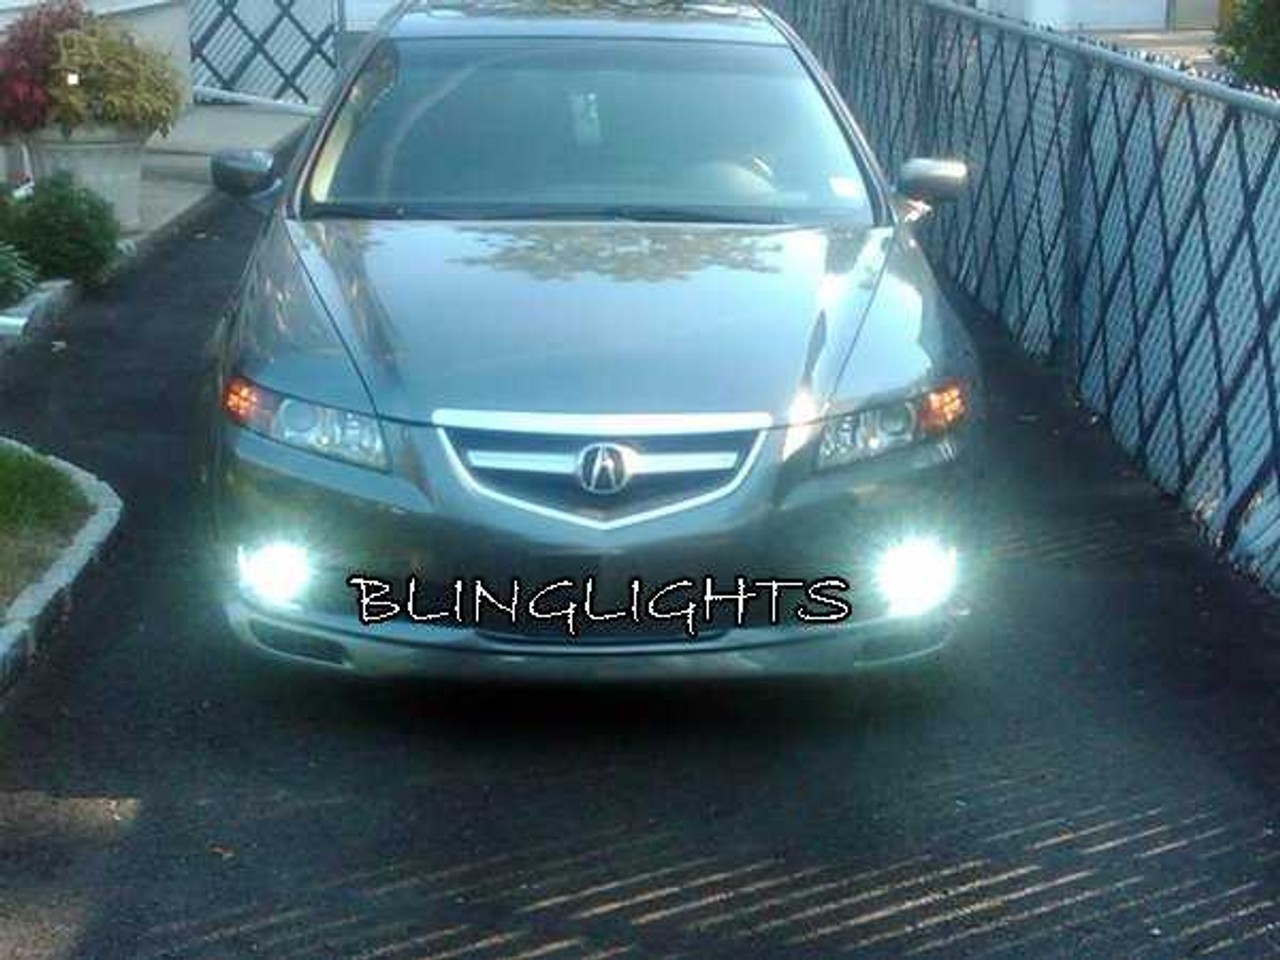 BlingLights Brand LED Fog Lights for 2004 2005 2006 2007 2008 Acura TL